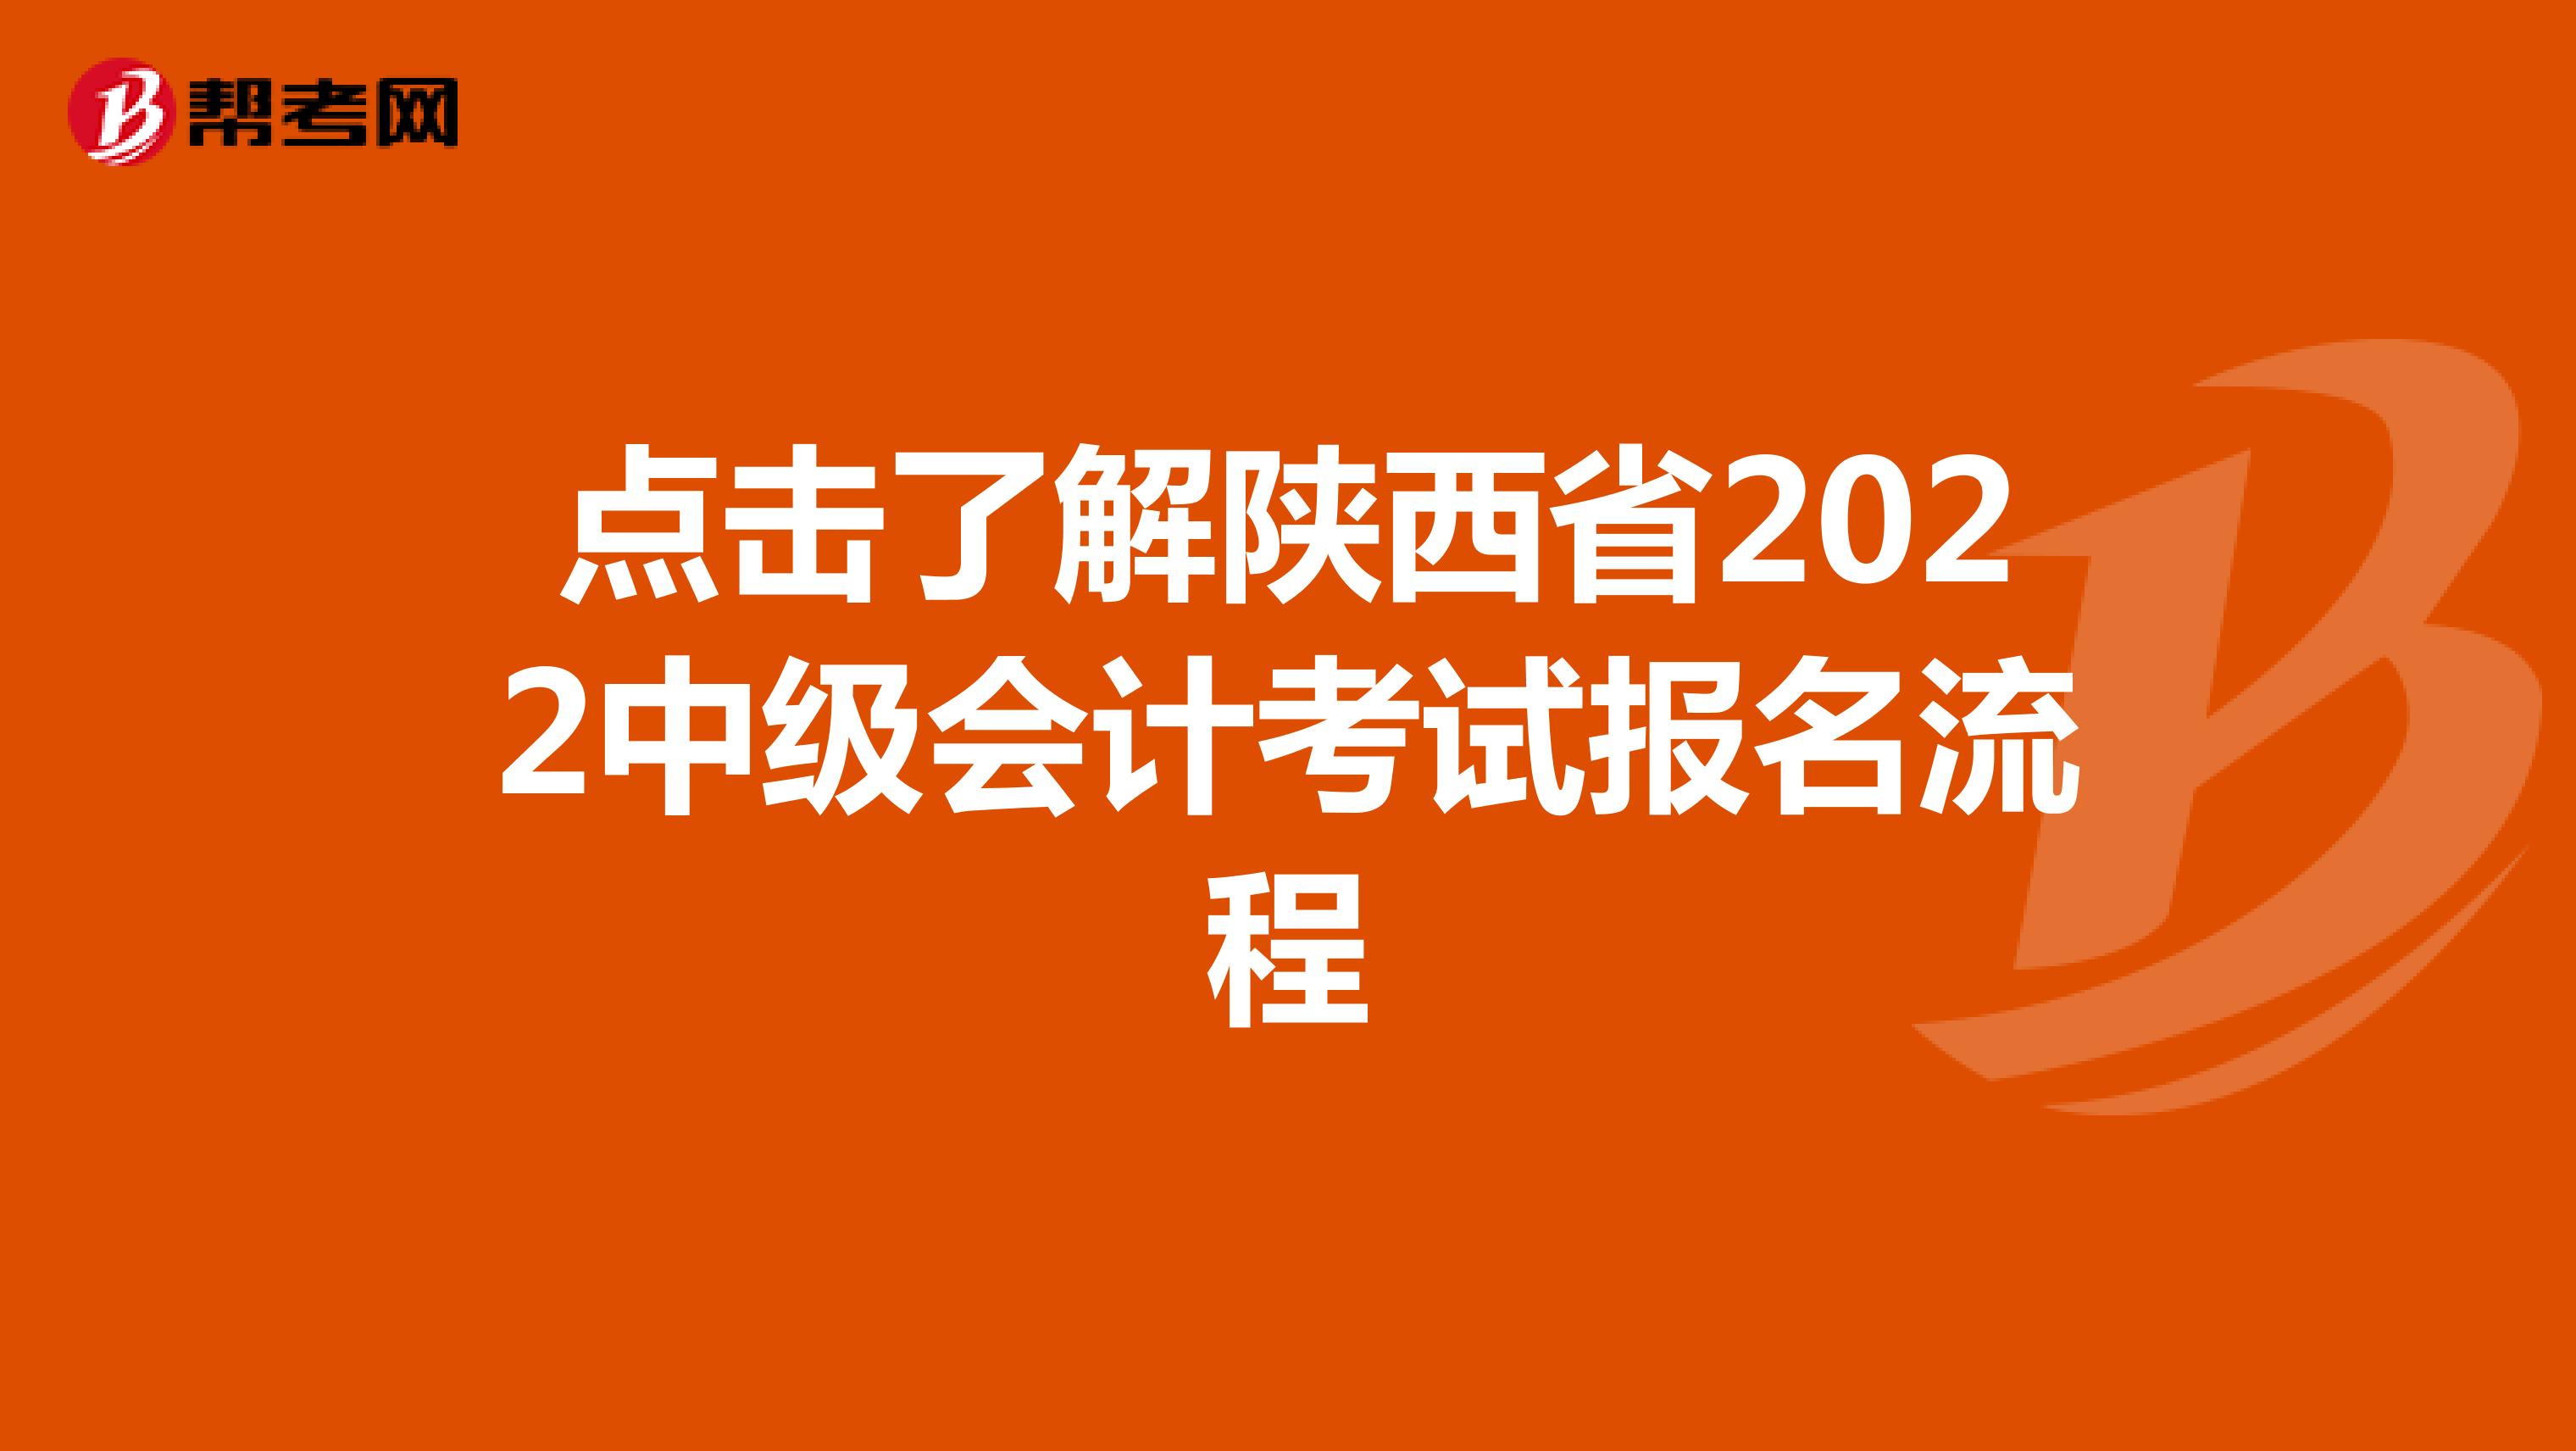 點擊了解陜西省2022中級會計考試報名流程